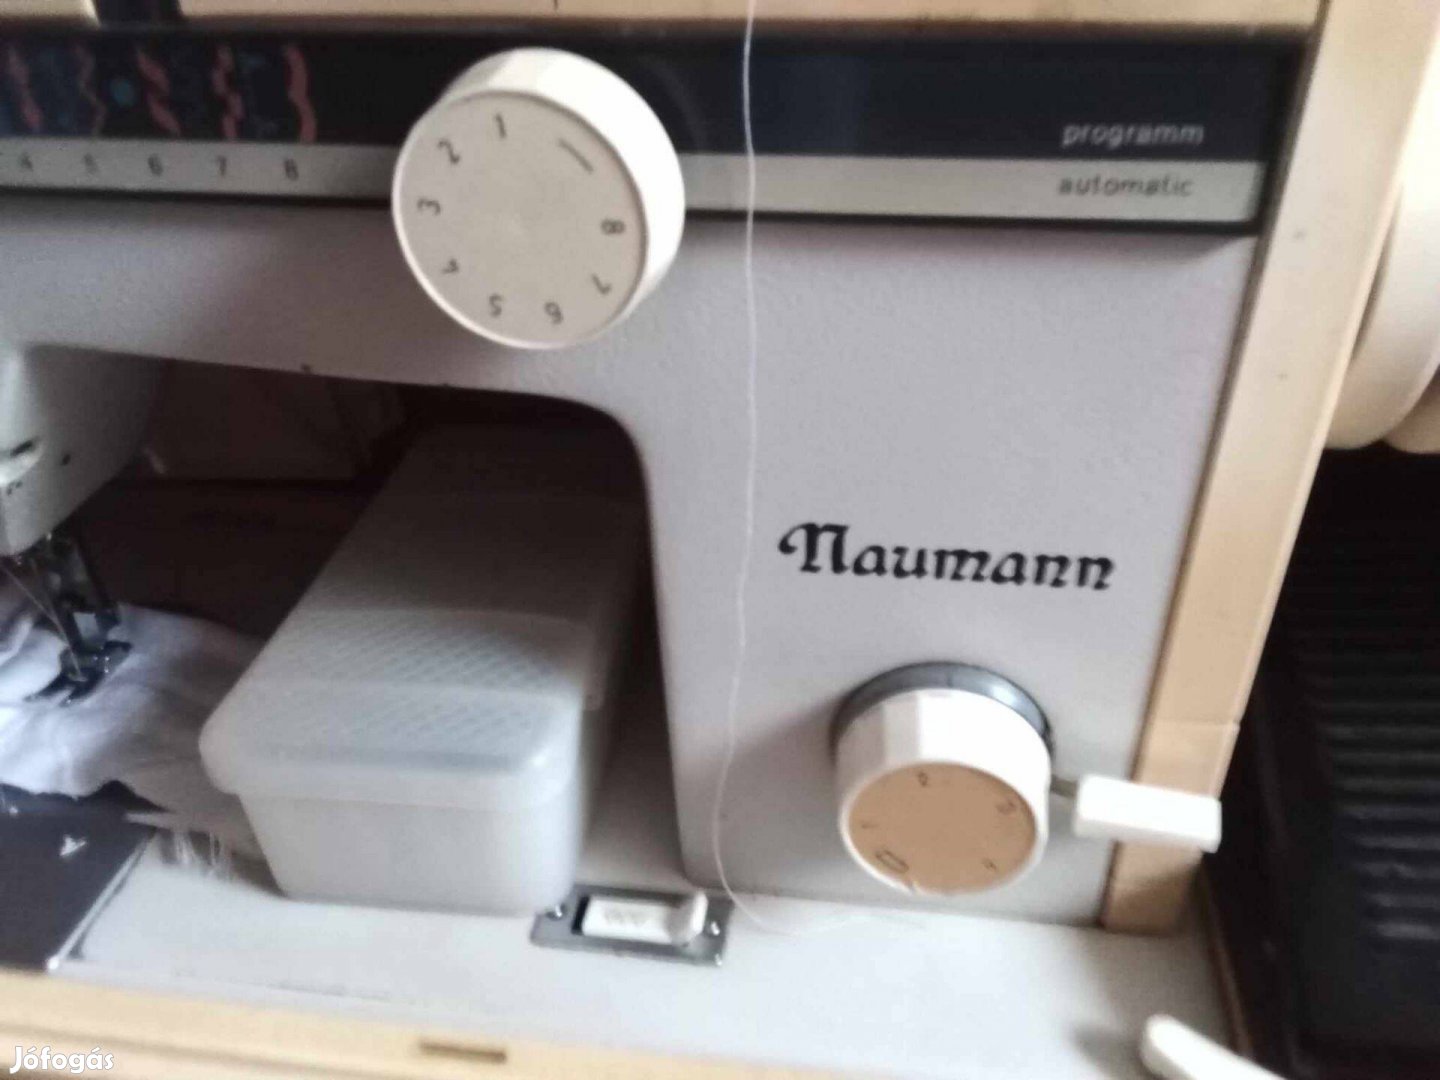 Neumann varrógép